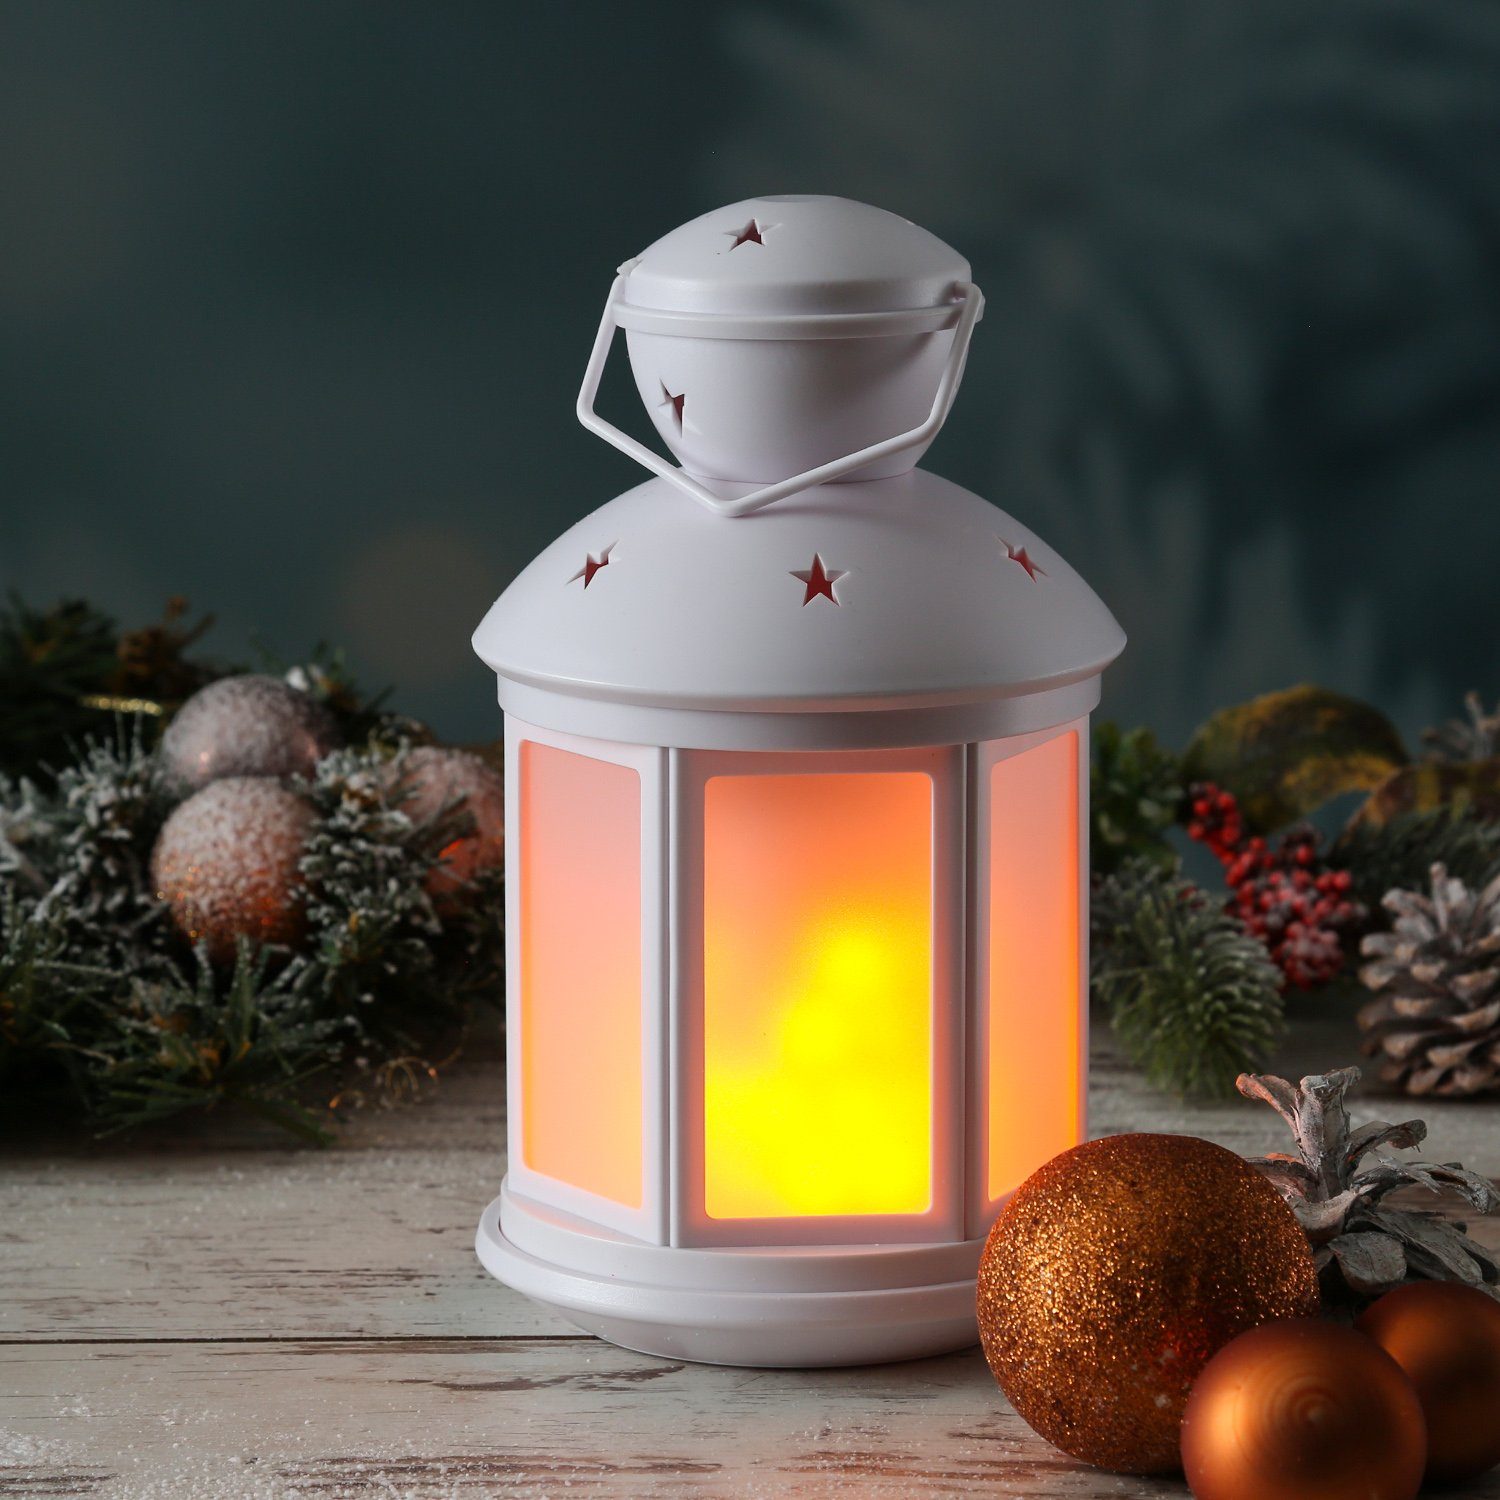 MARELIDA LED Laterne Dekolaterne amber weiß, 22cm LED LED Classic, flackernd Flammeneffekt Laterne mit